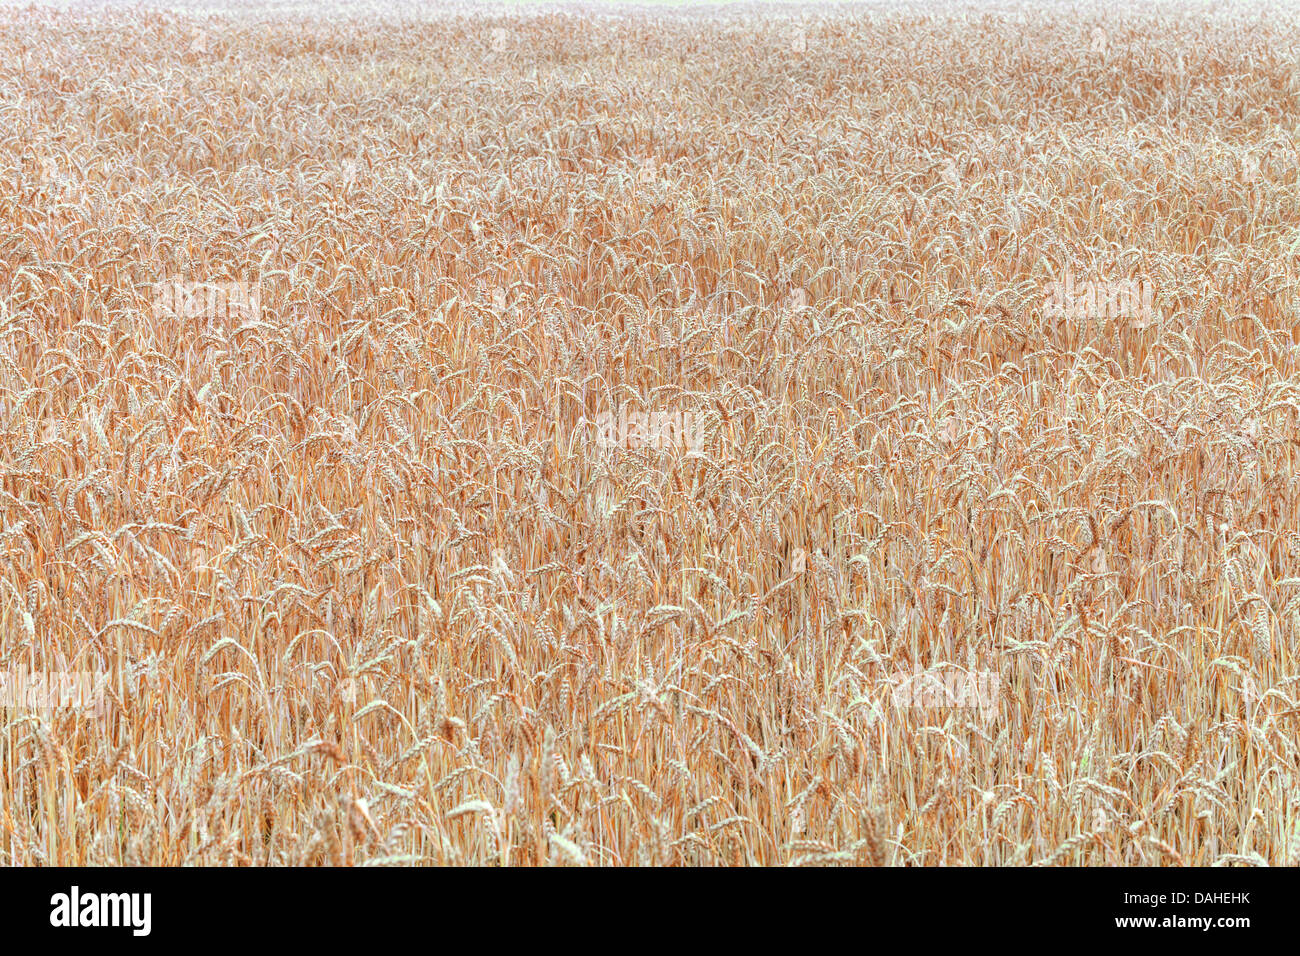 La récolte de blé sur le terrain Banque D'Images